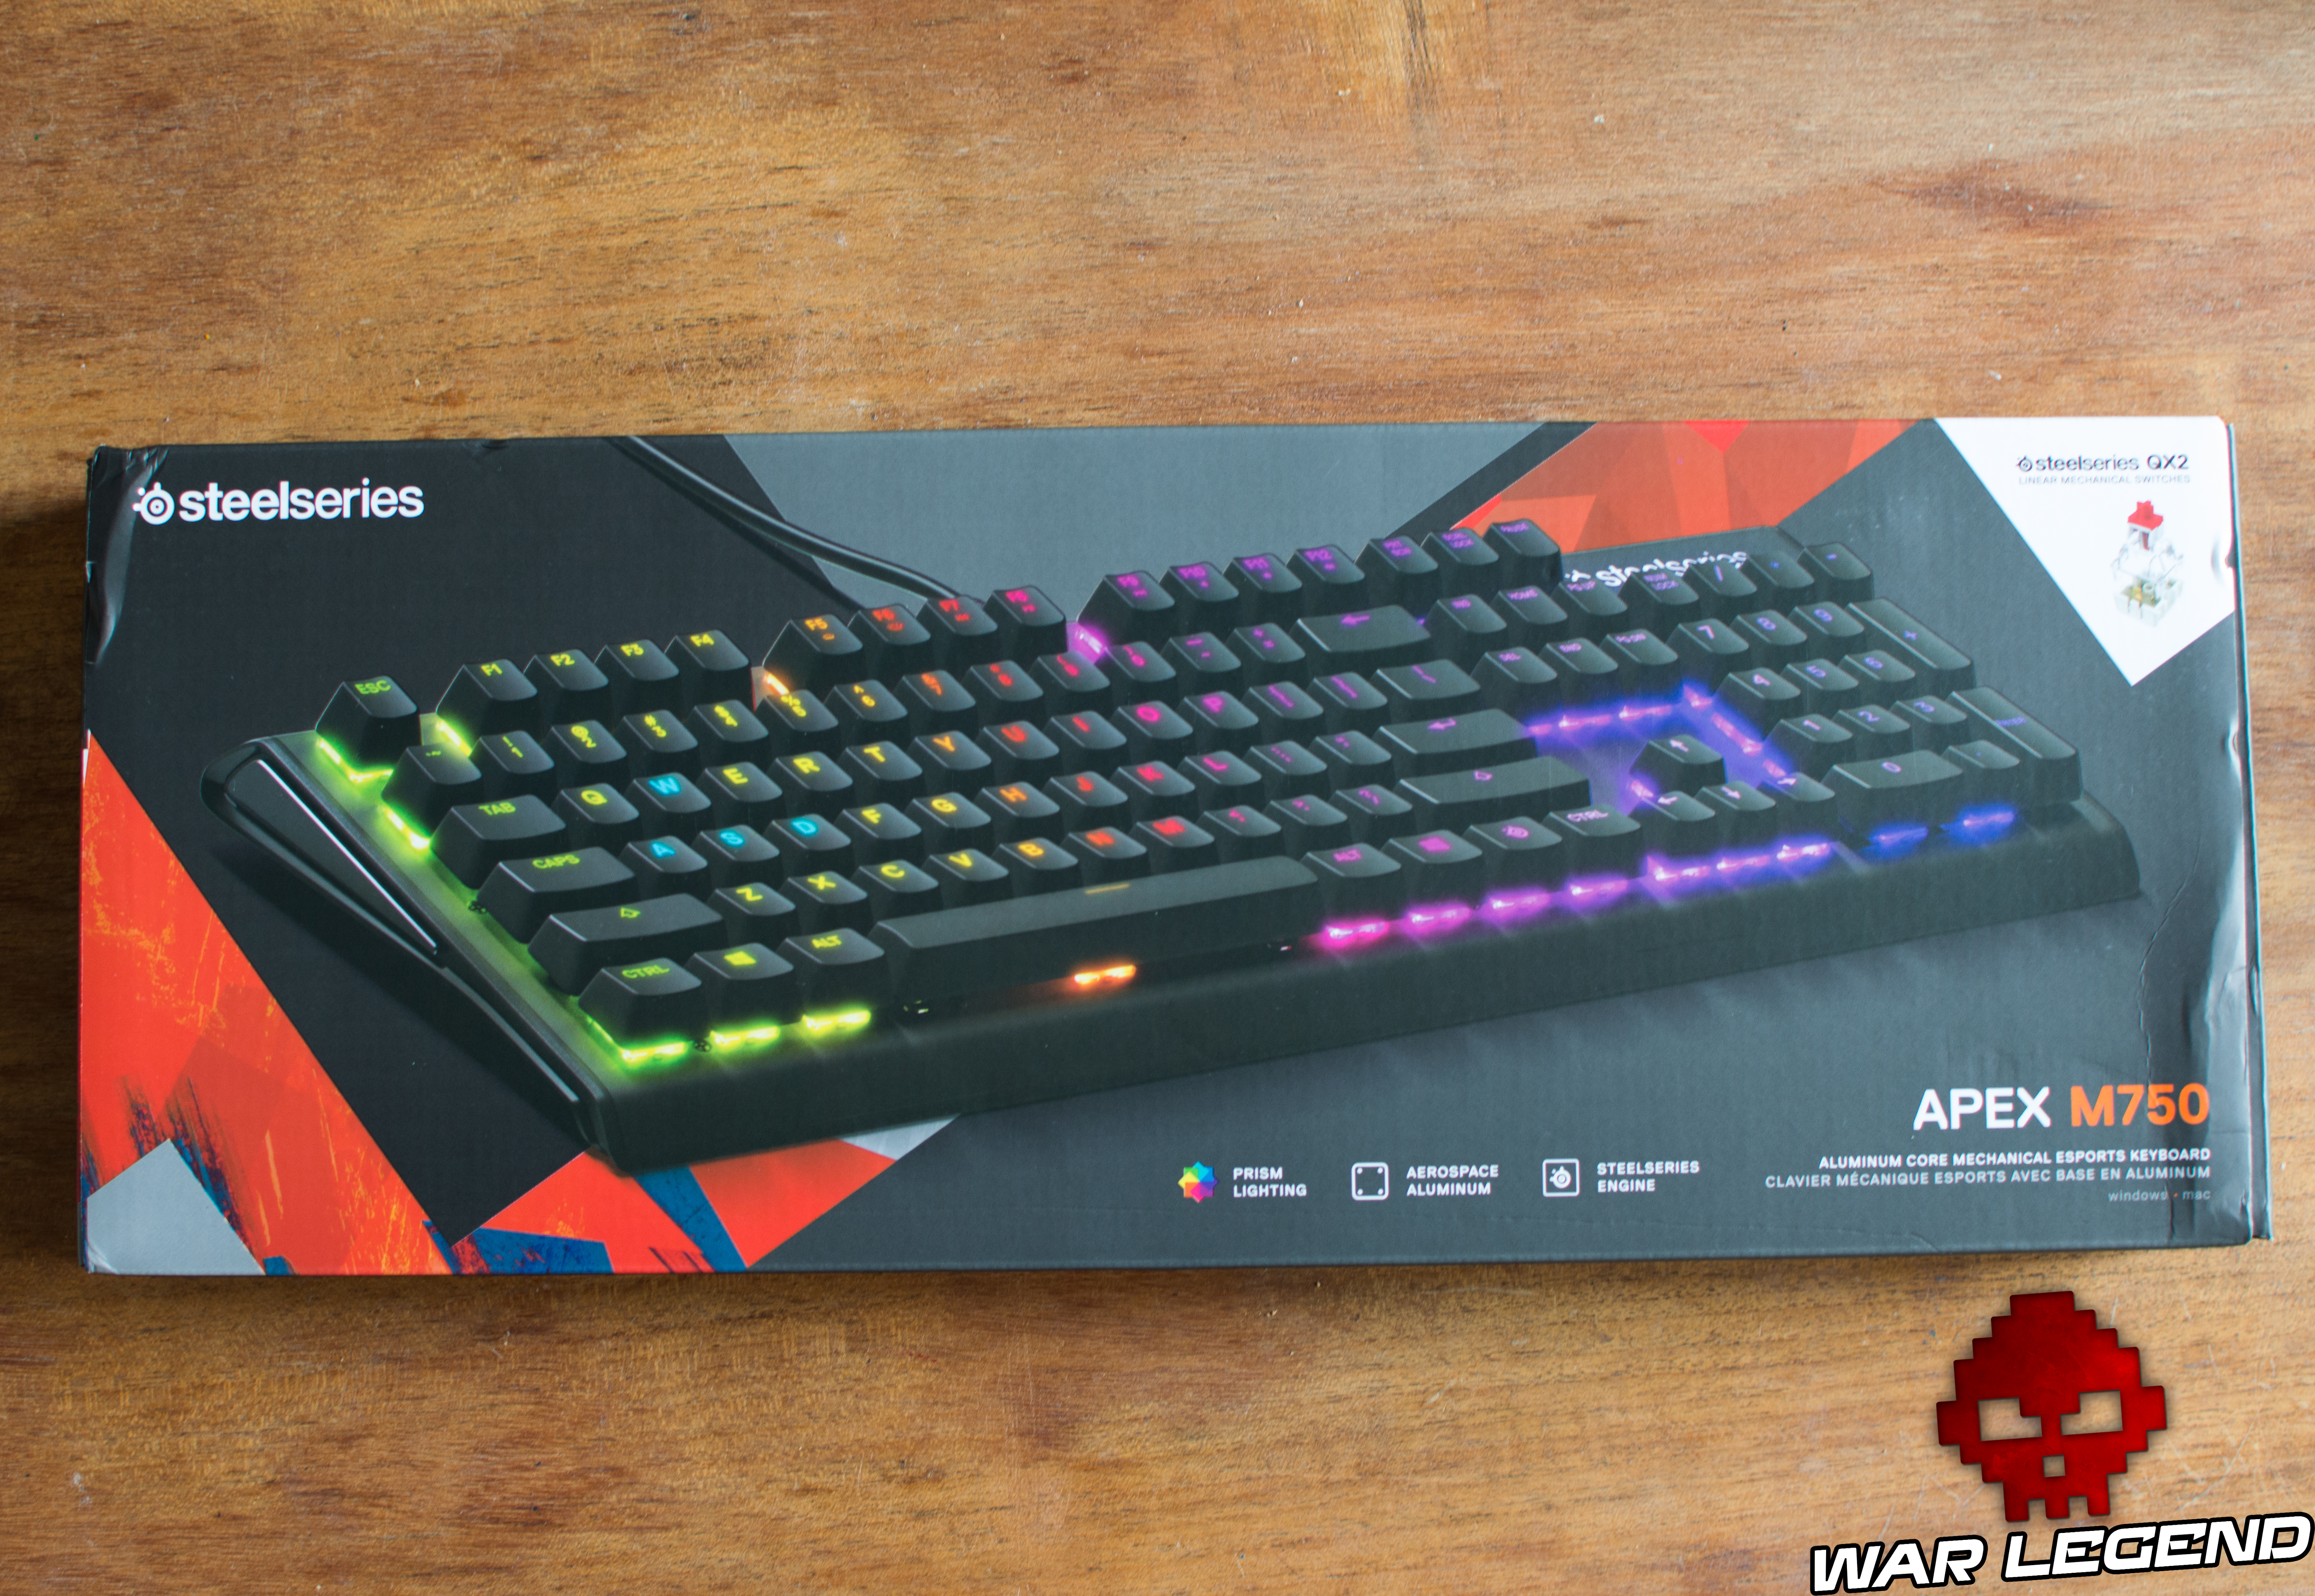 Nouveau clavier mécanique gaming SteelSeries : l'Apex M750